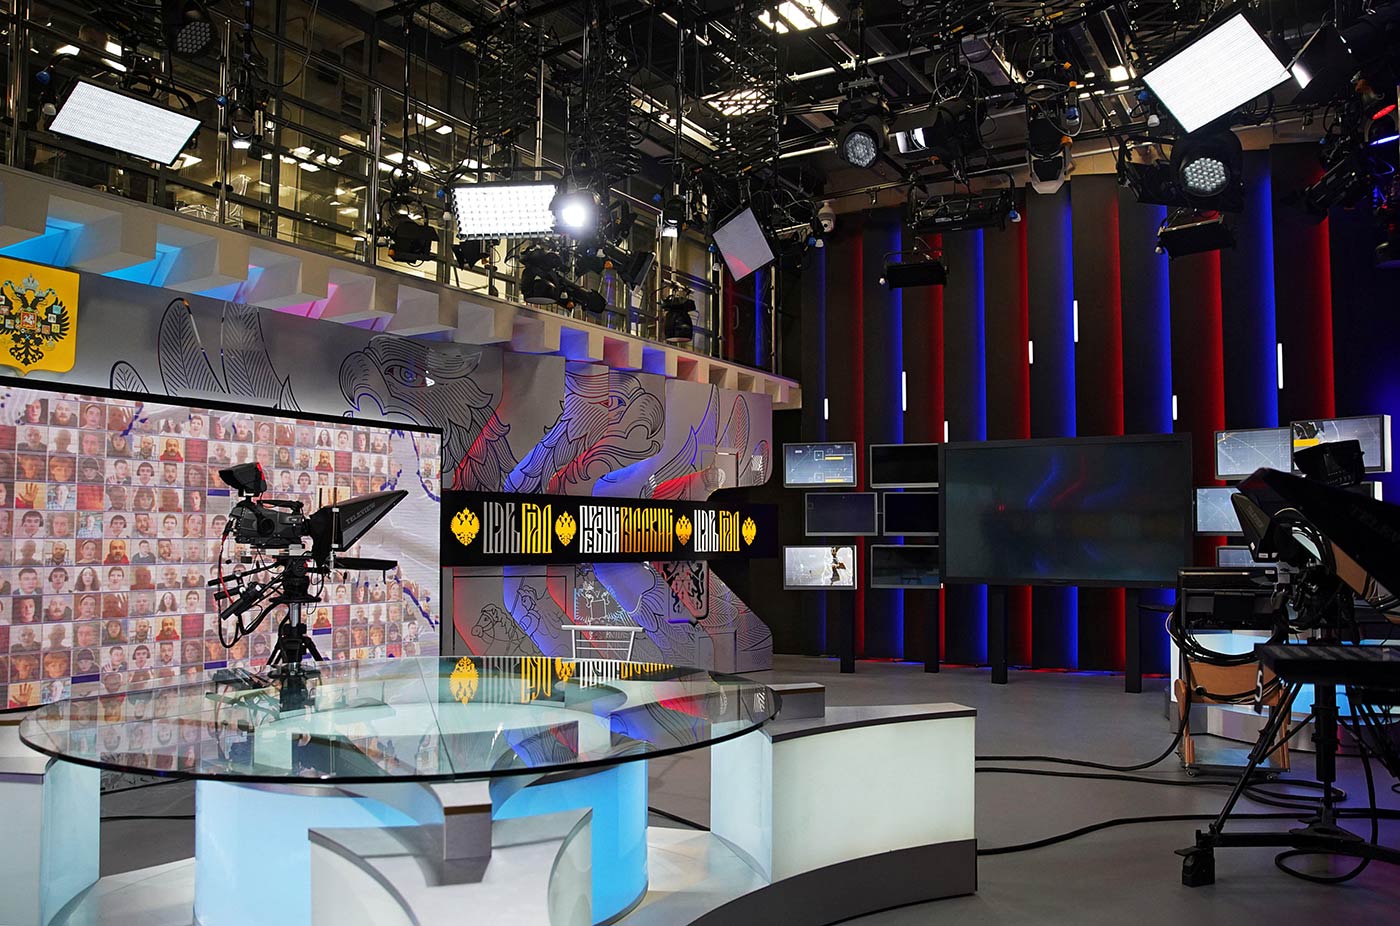 The Tsargrad TV studio